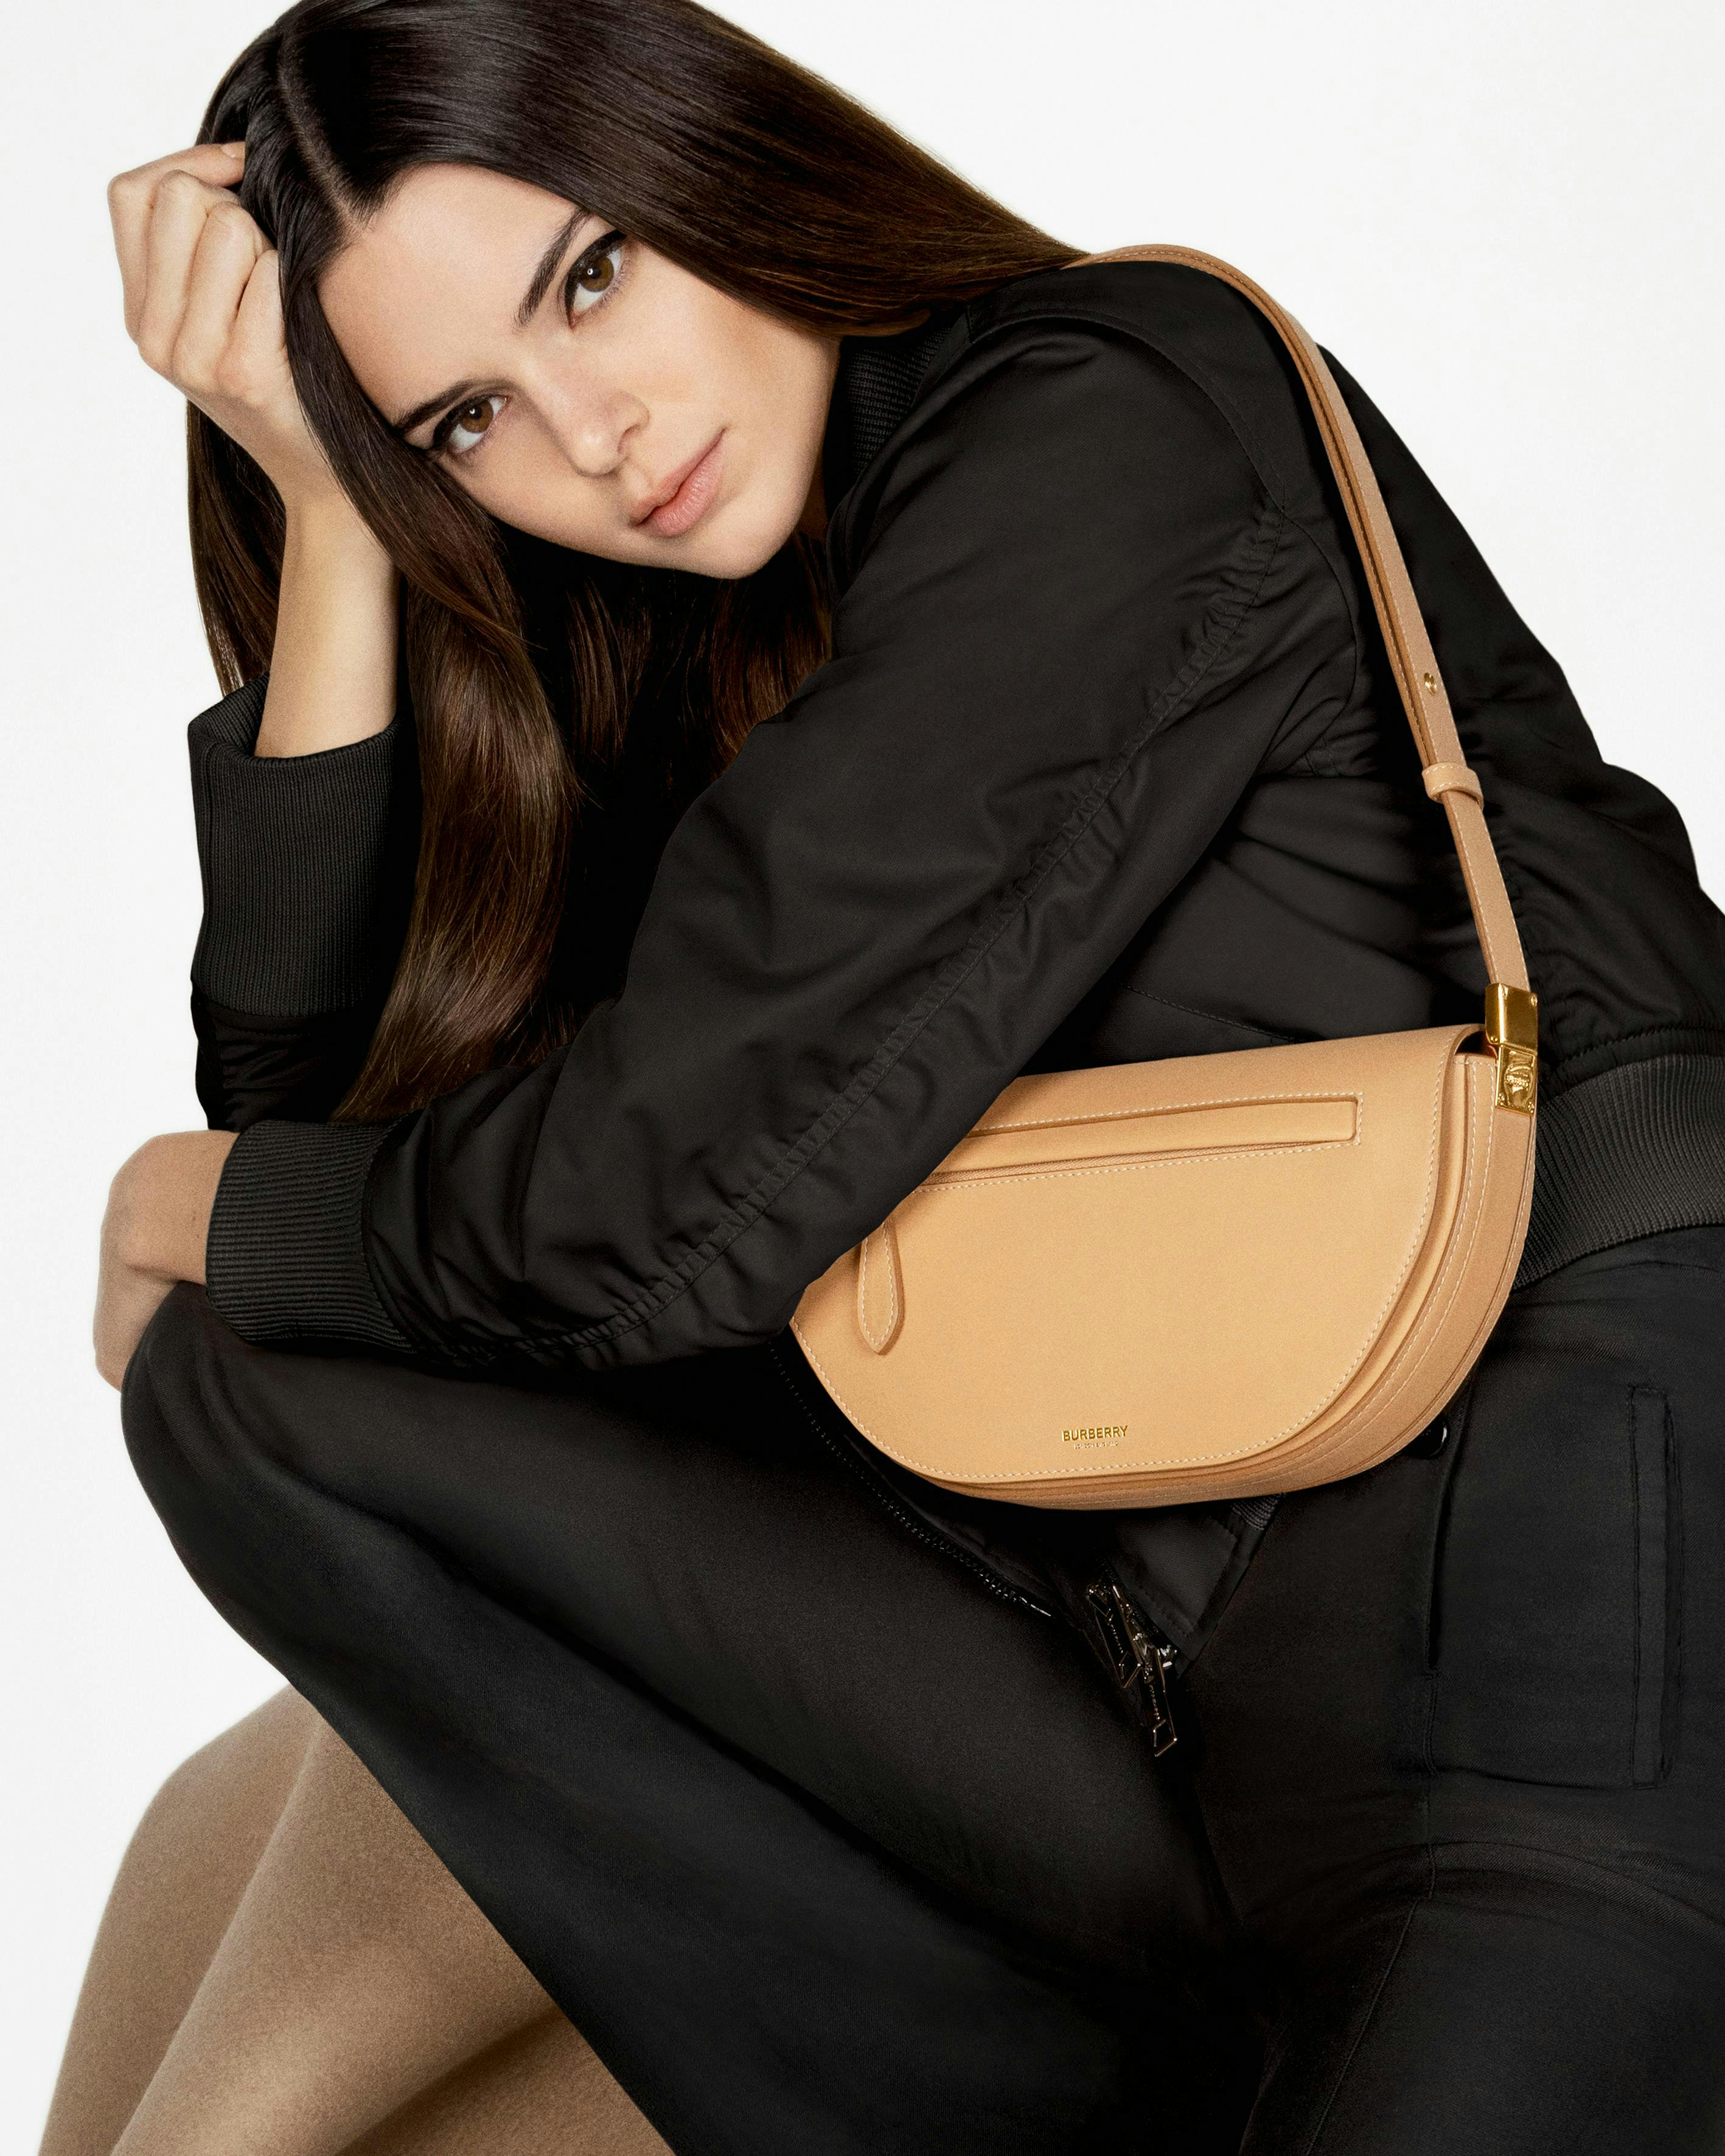 Una foto di Kendall Jenner indossa l'Olimpya Bag di Burberry